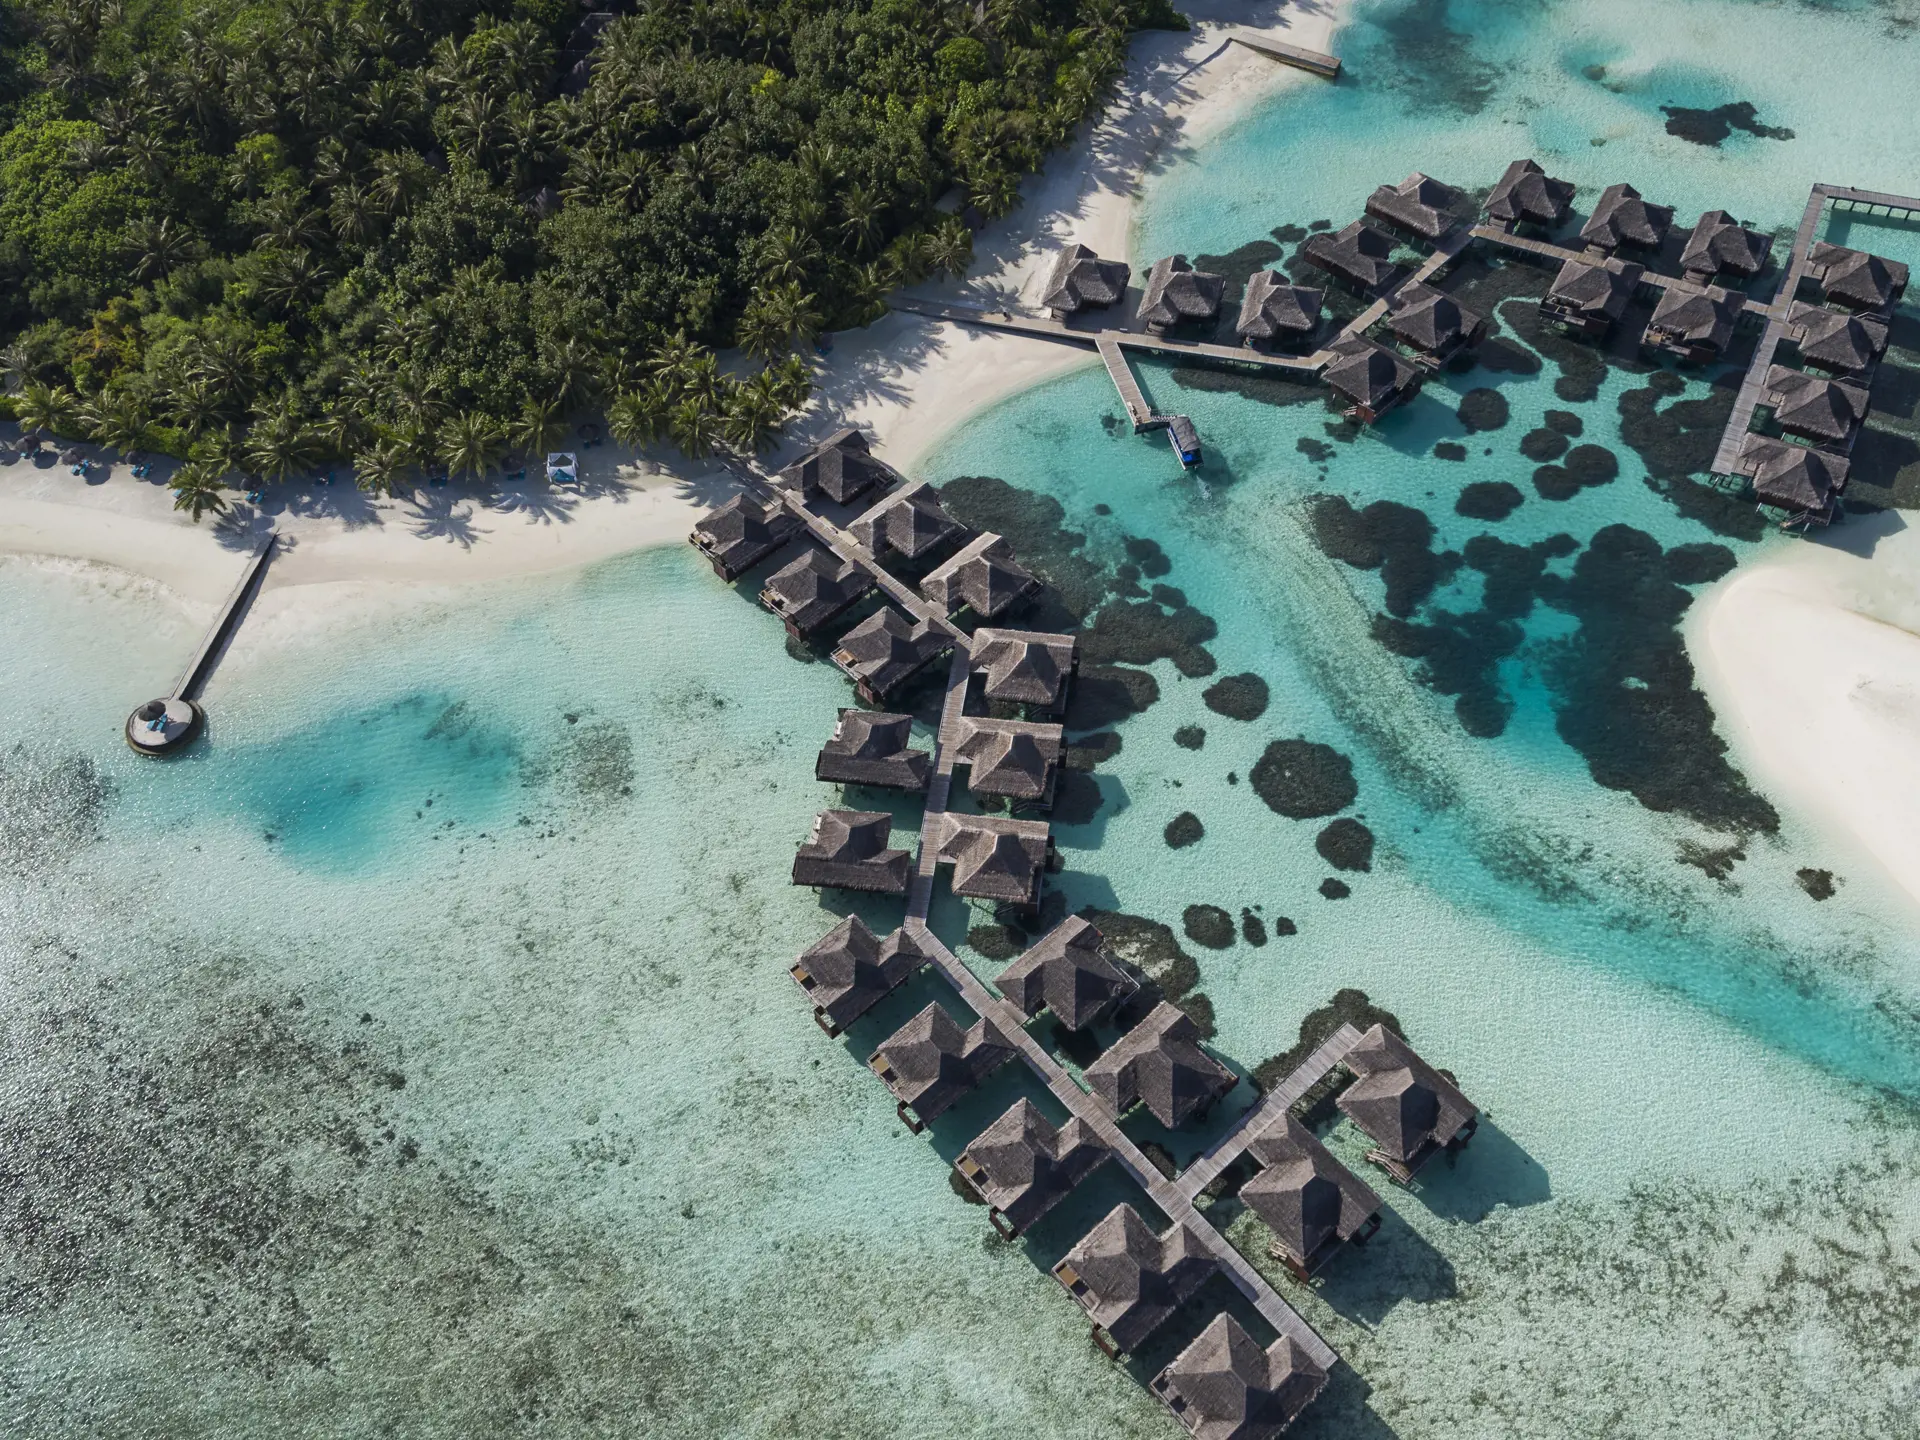 PARADIS PÅ VANDET - På Maldiverne bor I direkte over det krystalklare vand. 